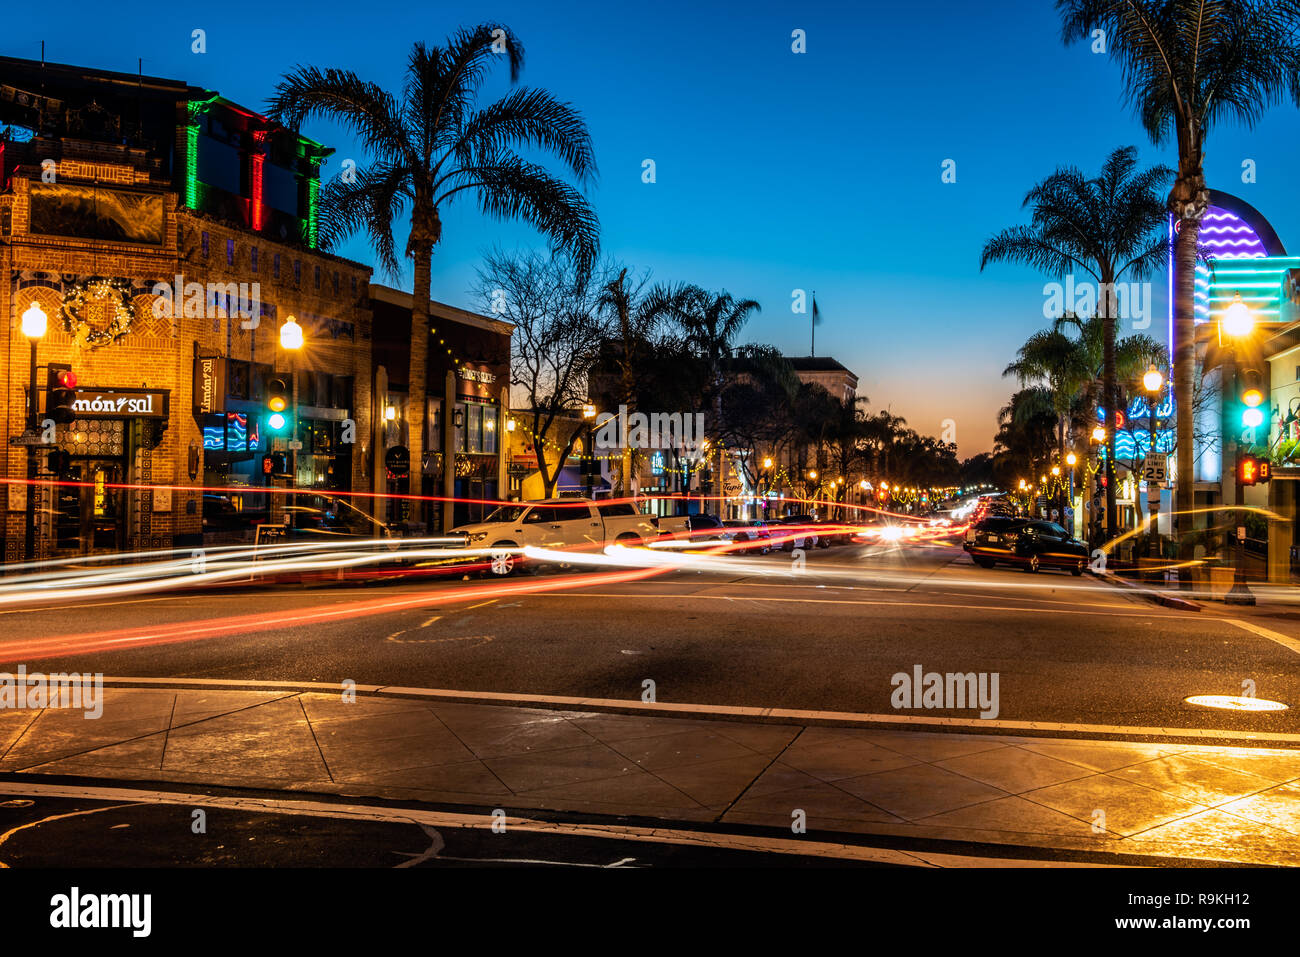 Schnittpunkt auf der Main Street in der Innenstadt von Ventura, Kalifornien, USA mit Weihnachtsbeleuchtung und lange Linie der Träger hat die offene Restaurants auf Chr eingerichtet Stockfoto